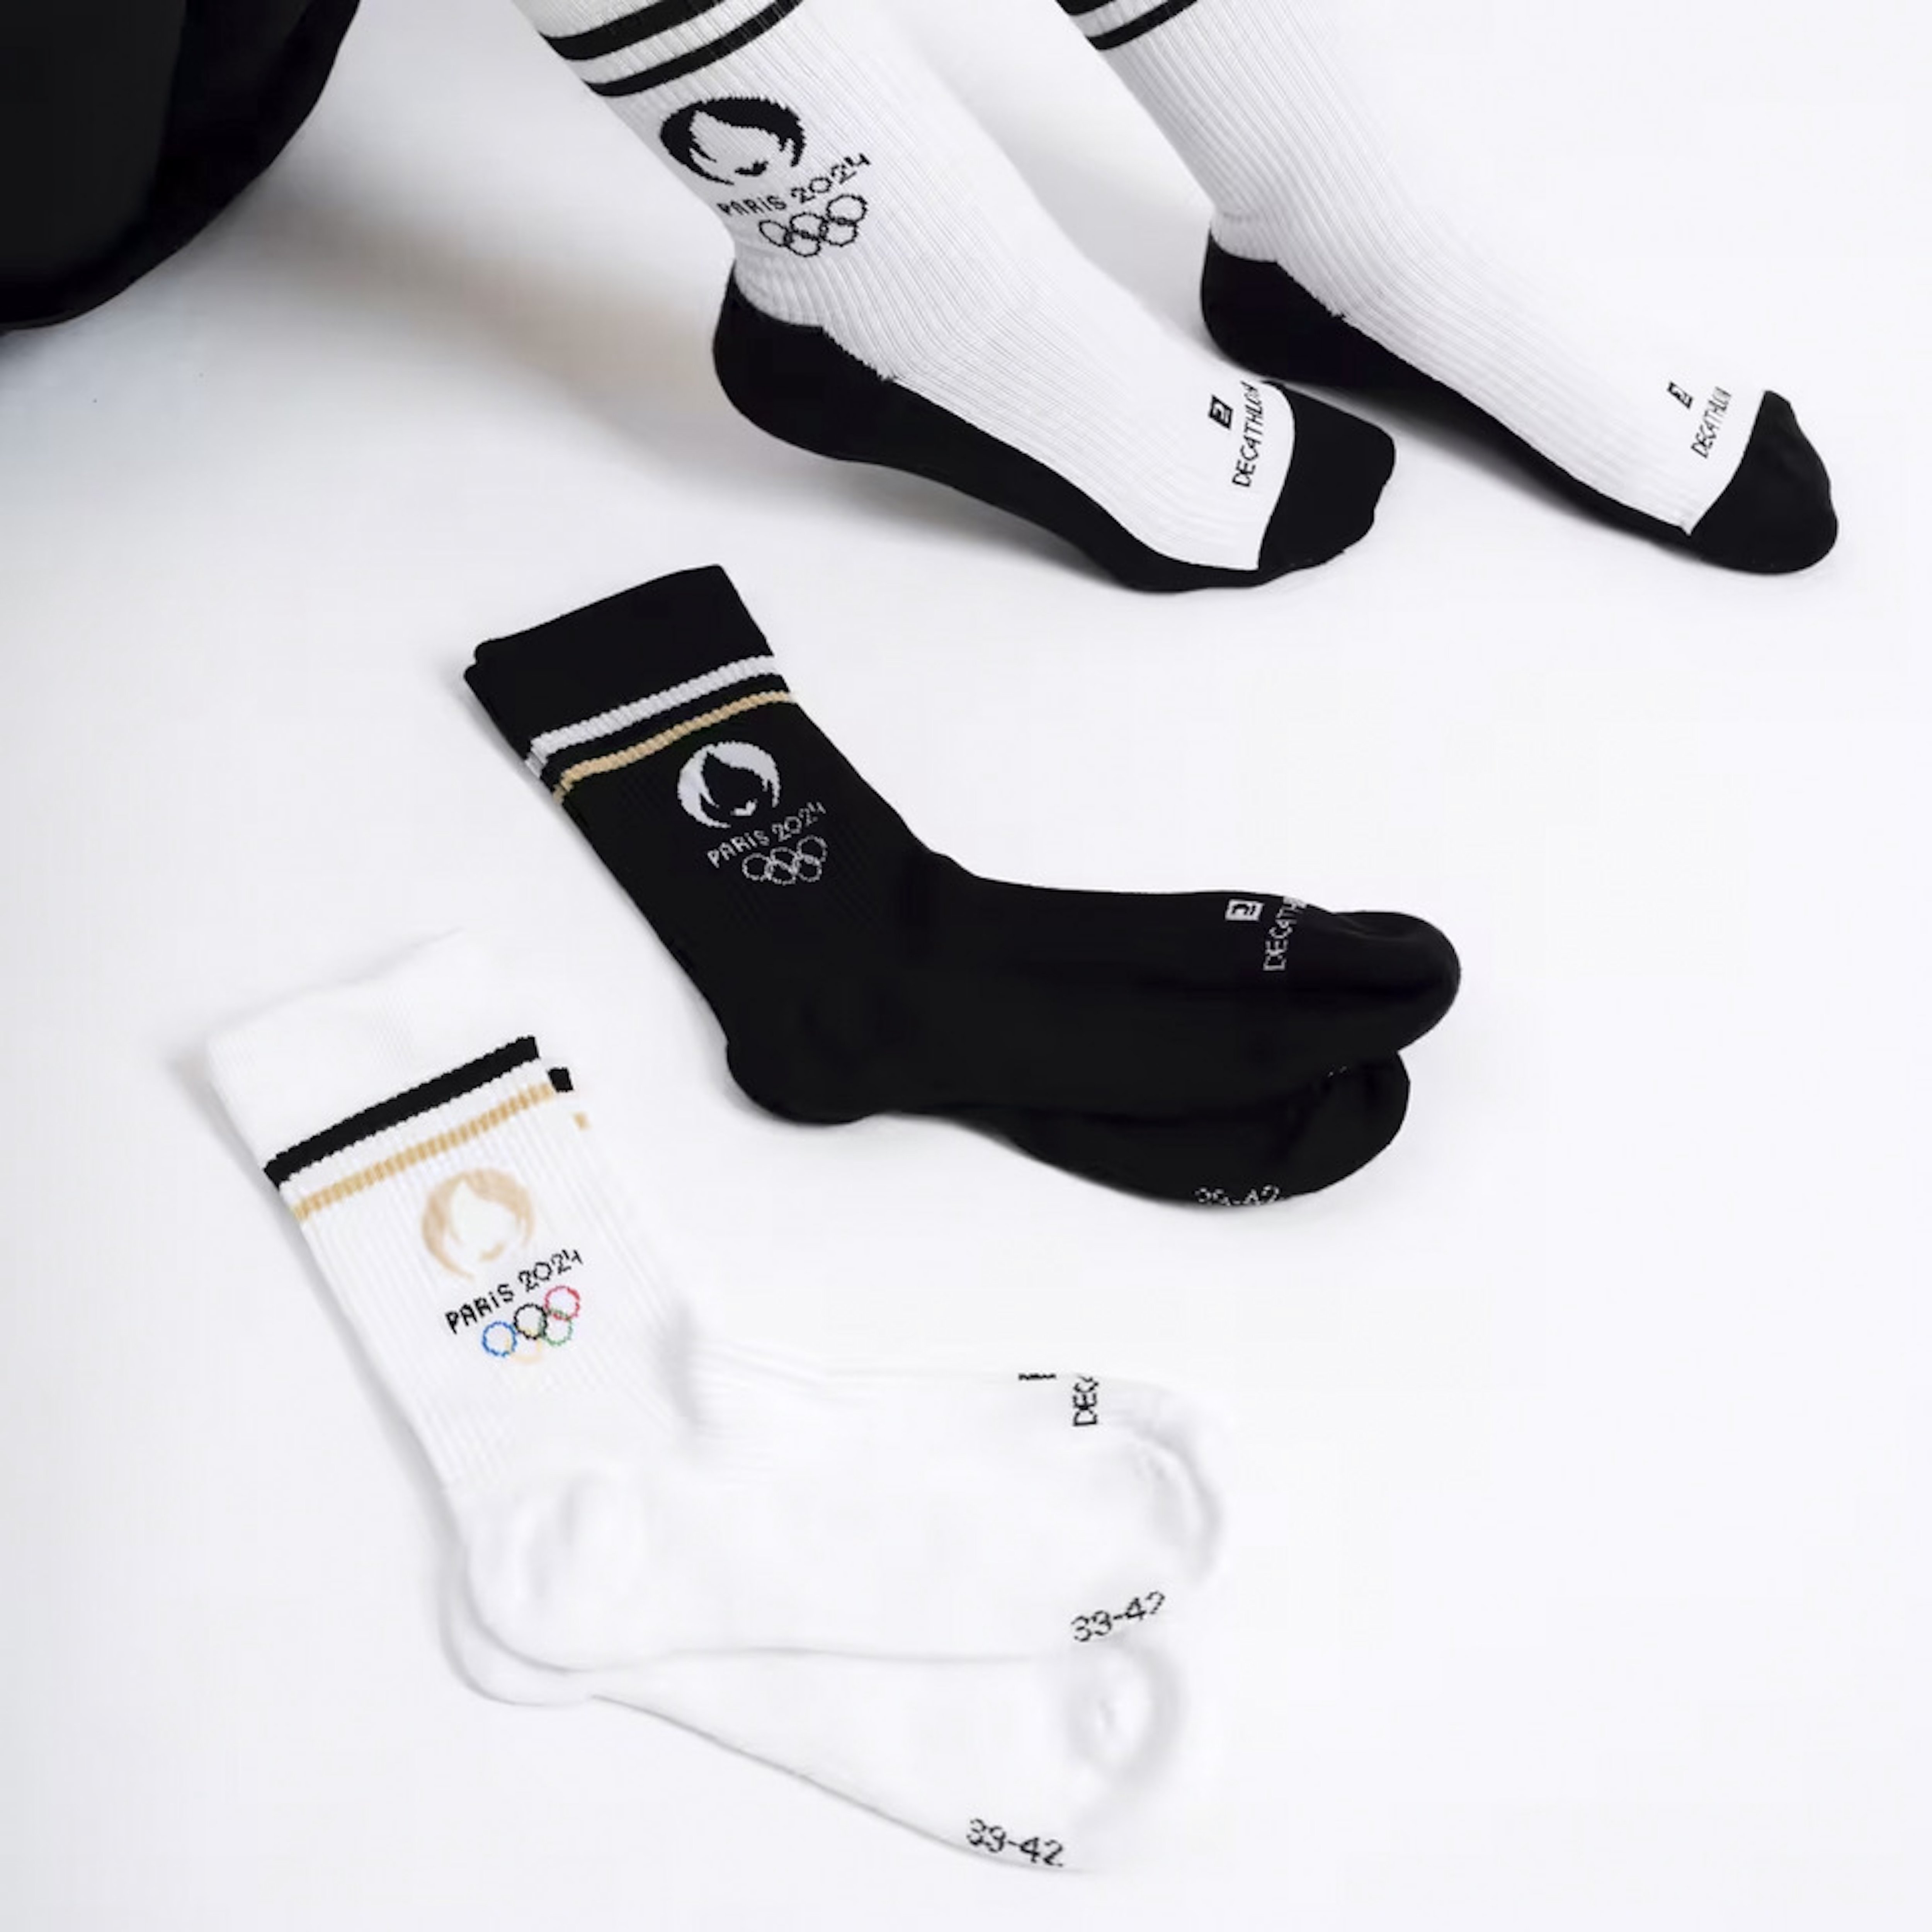 Decathlon, partenaire de Paris 2024, a fait confiance à l'usine troyenne Tismail pour concevoir les chaussettes des volontaires des Jeux olympiques et paralympiques ainsi que celles à destination du grand public avec le logo des Jeux/DR